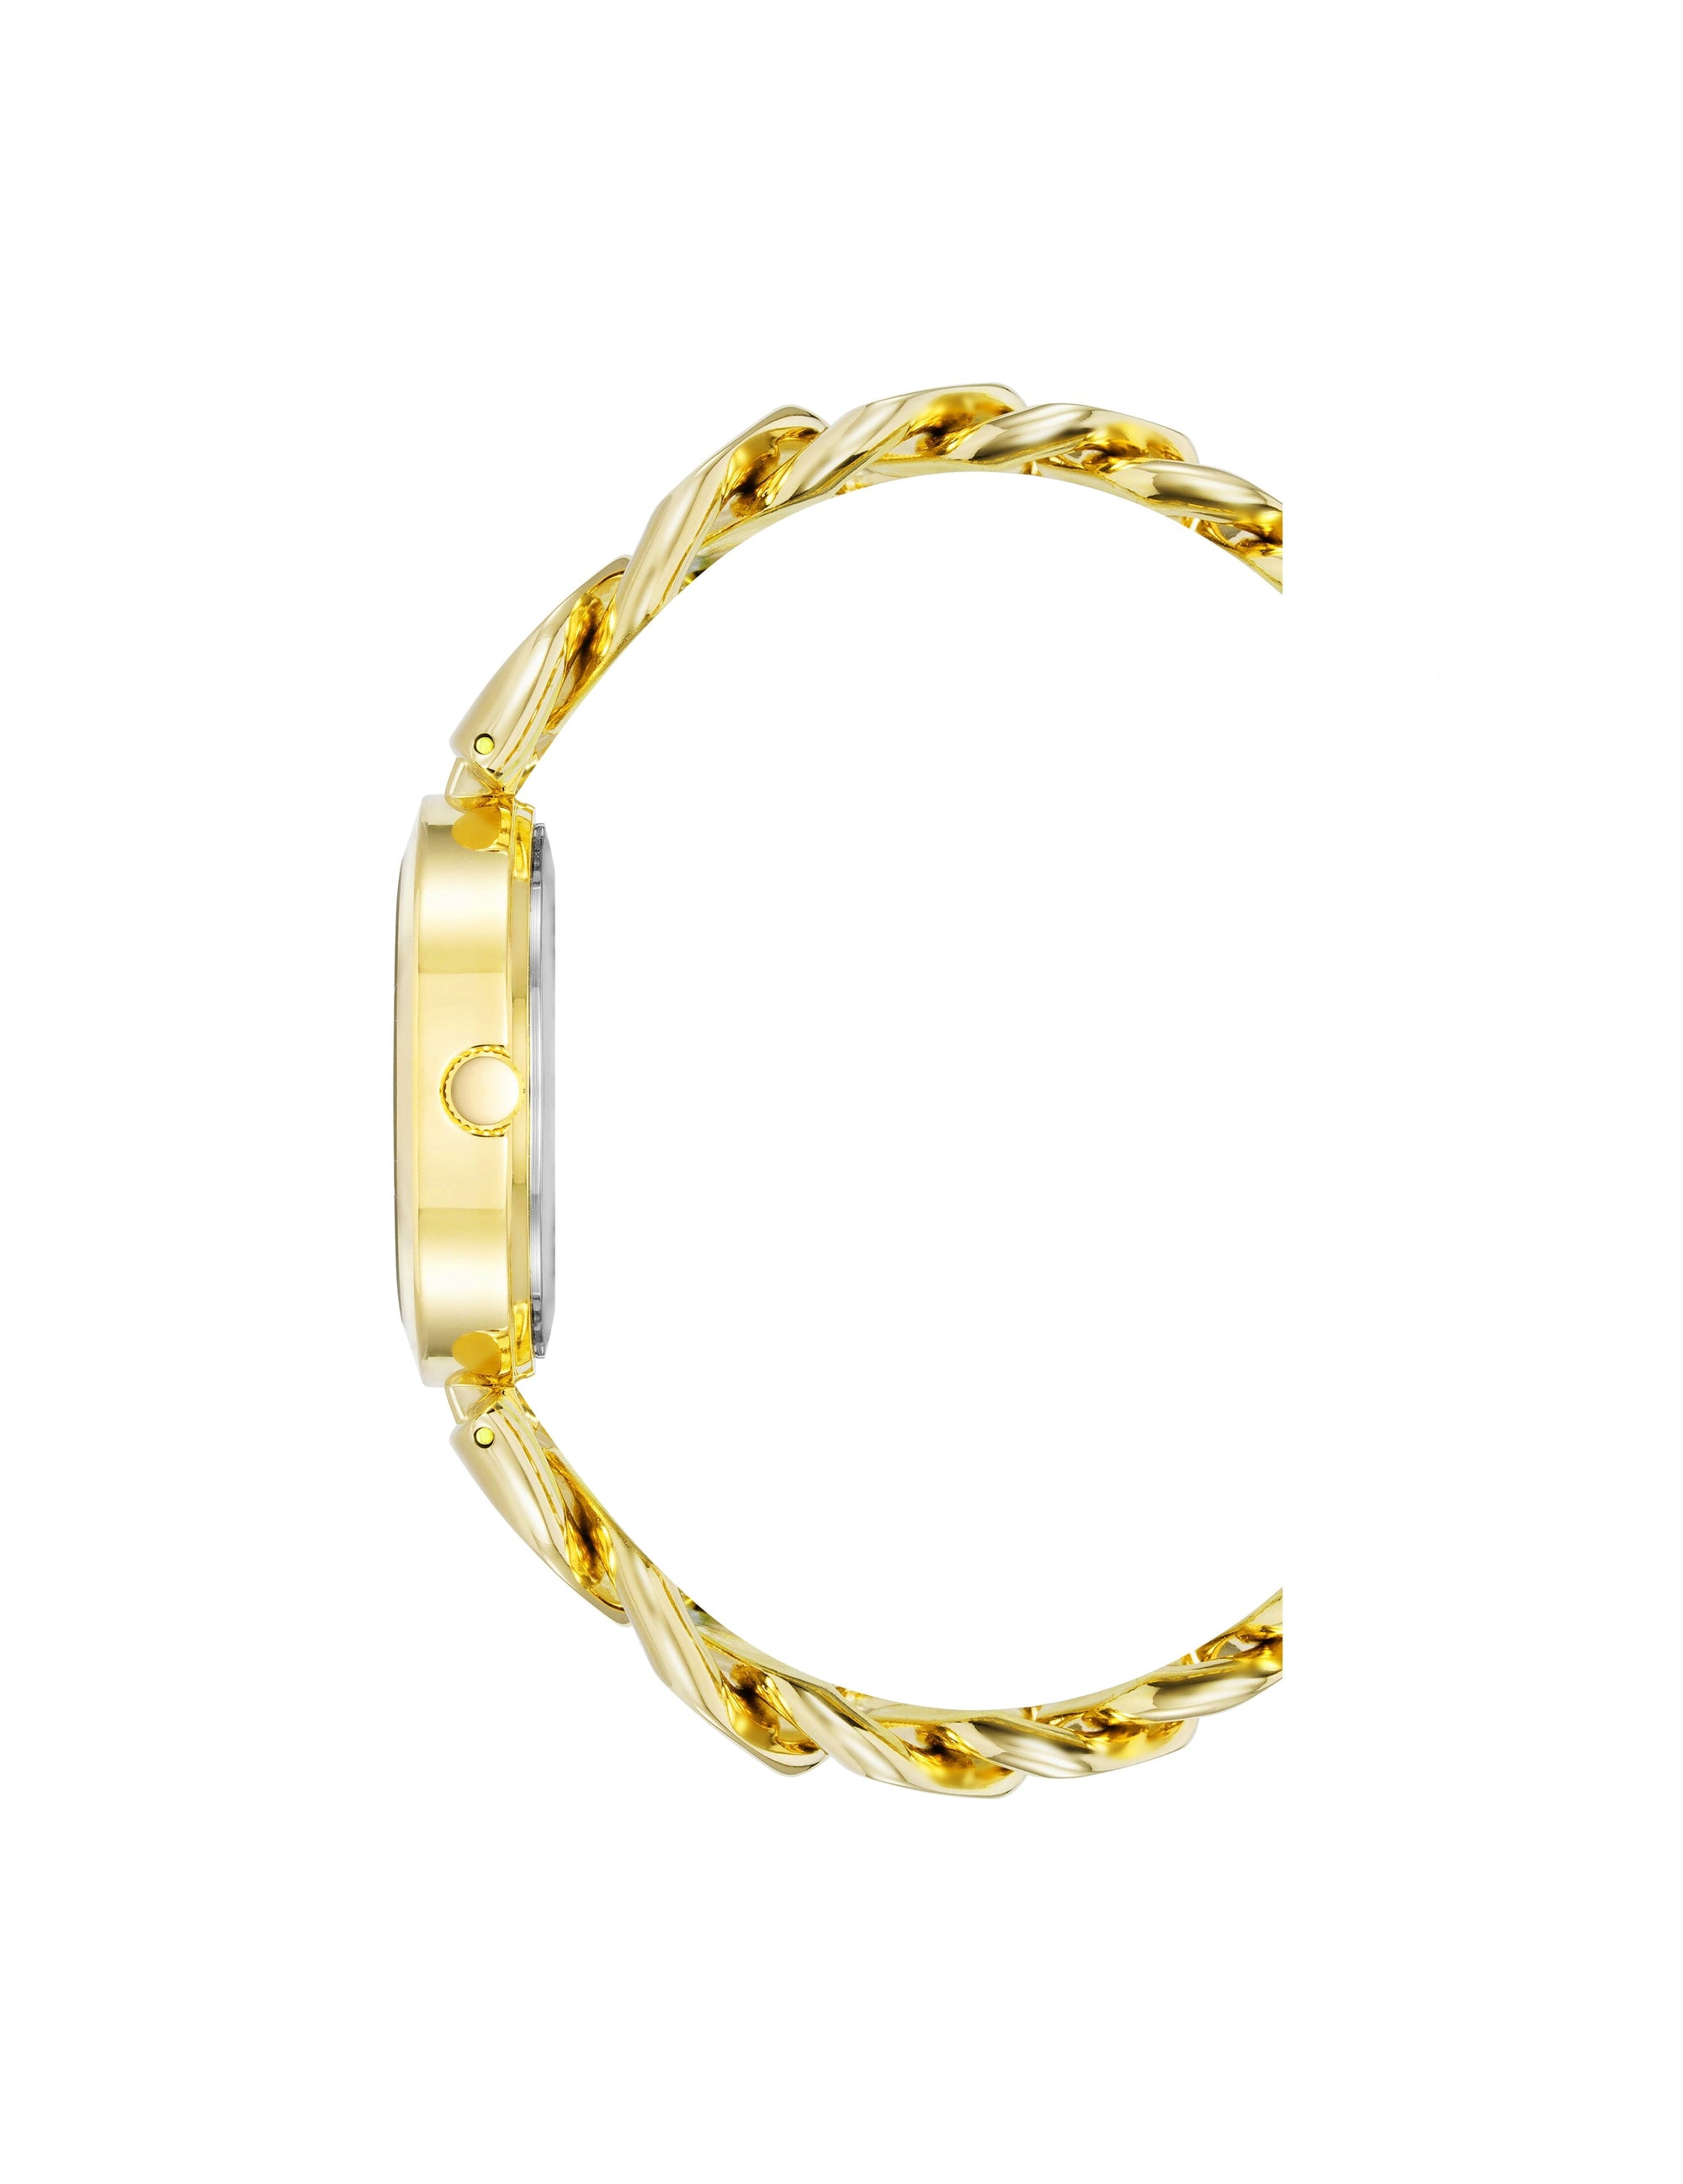 Anne Klein Gold-Tone/ Green Diamond Accented Round Case Bracelet Watch